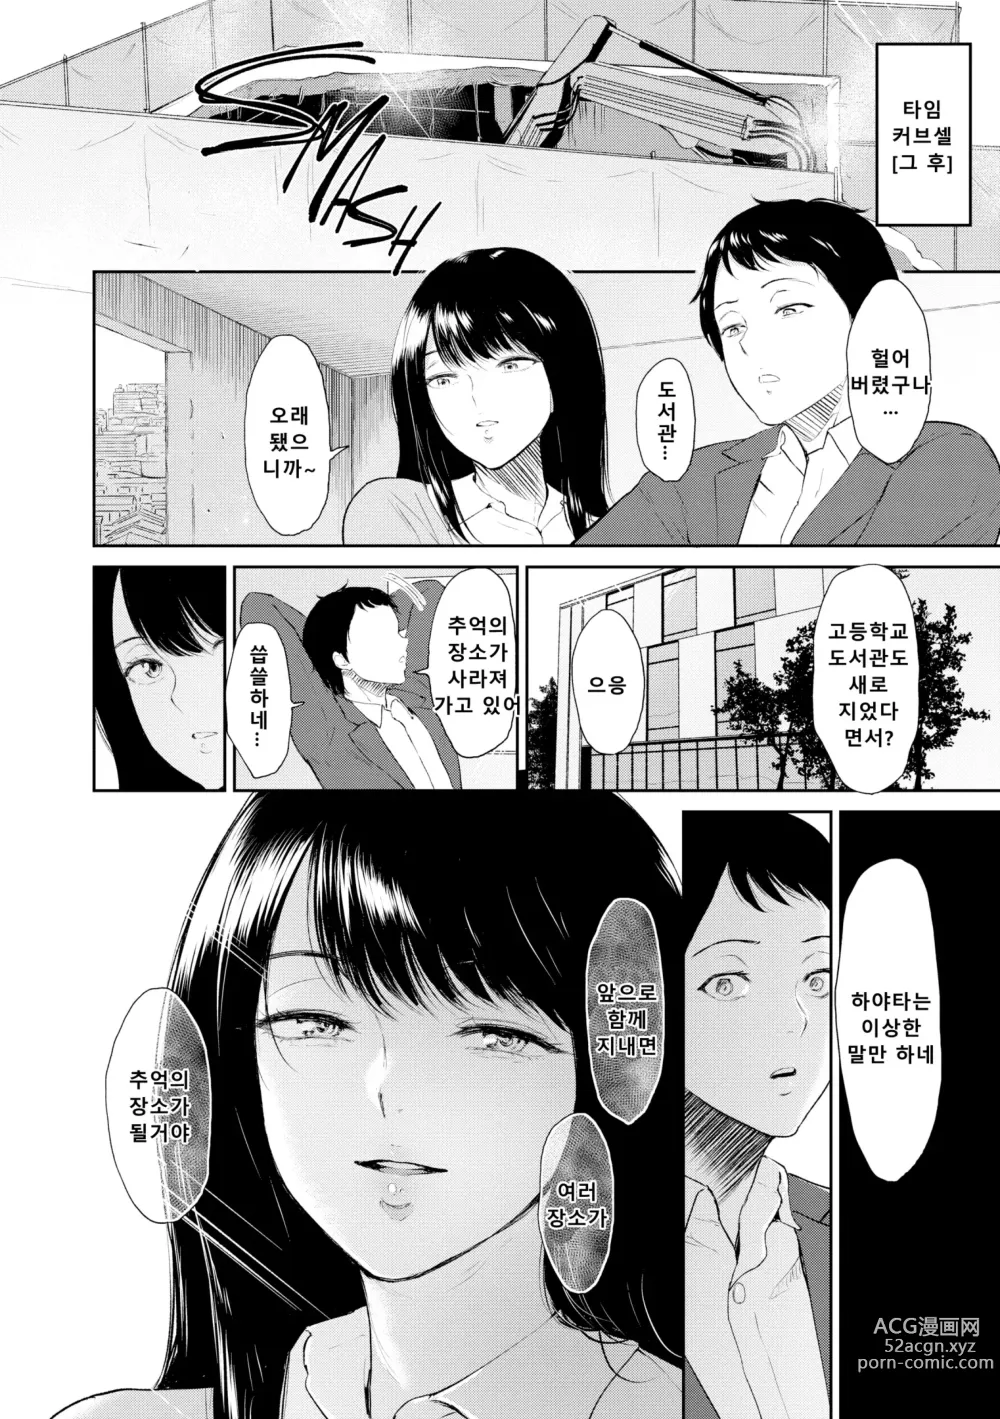 Page 189 of manga Joukou no Hibi